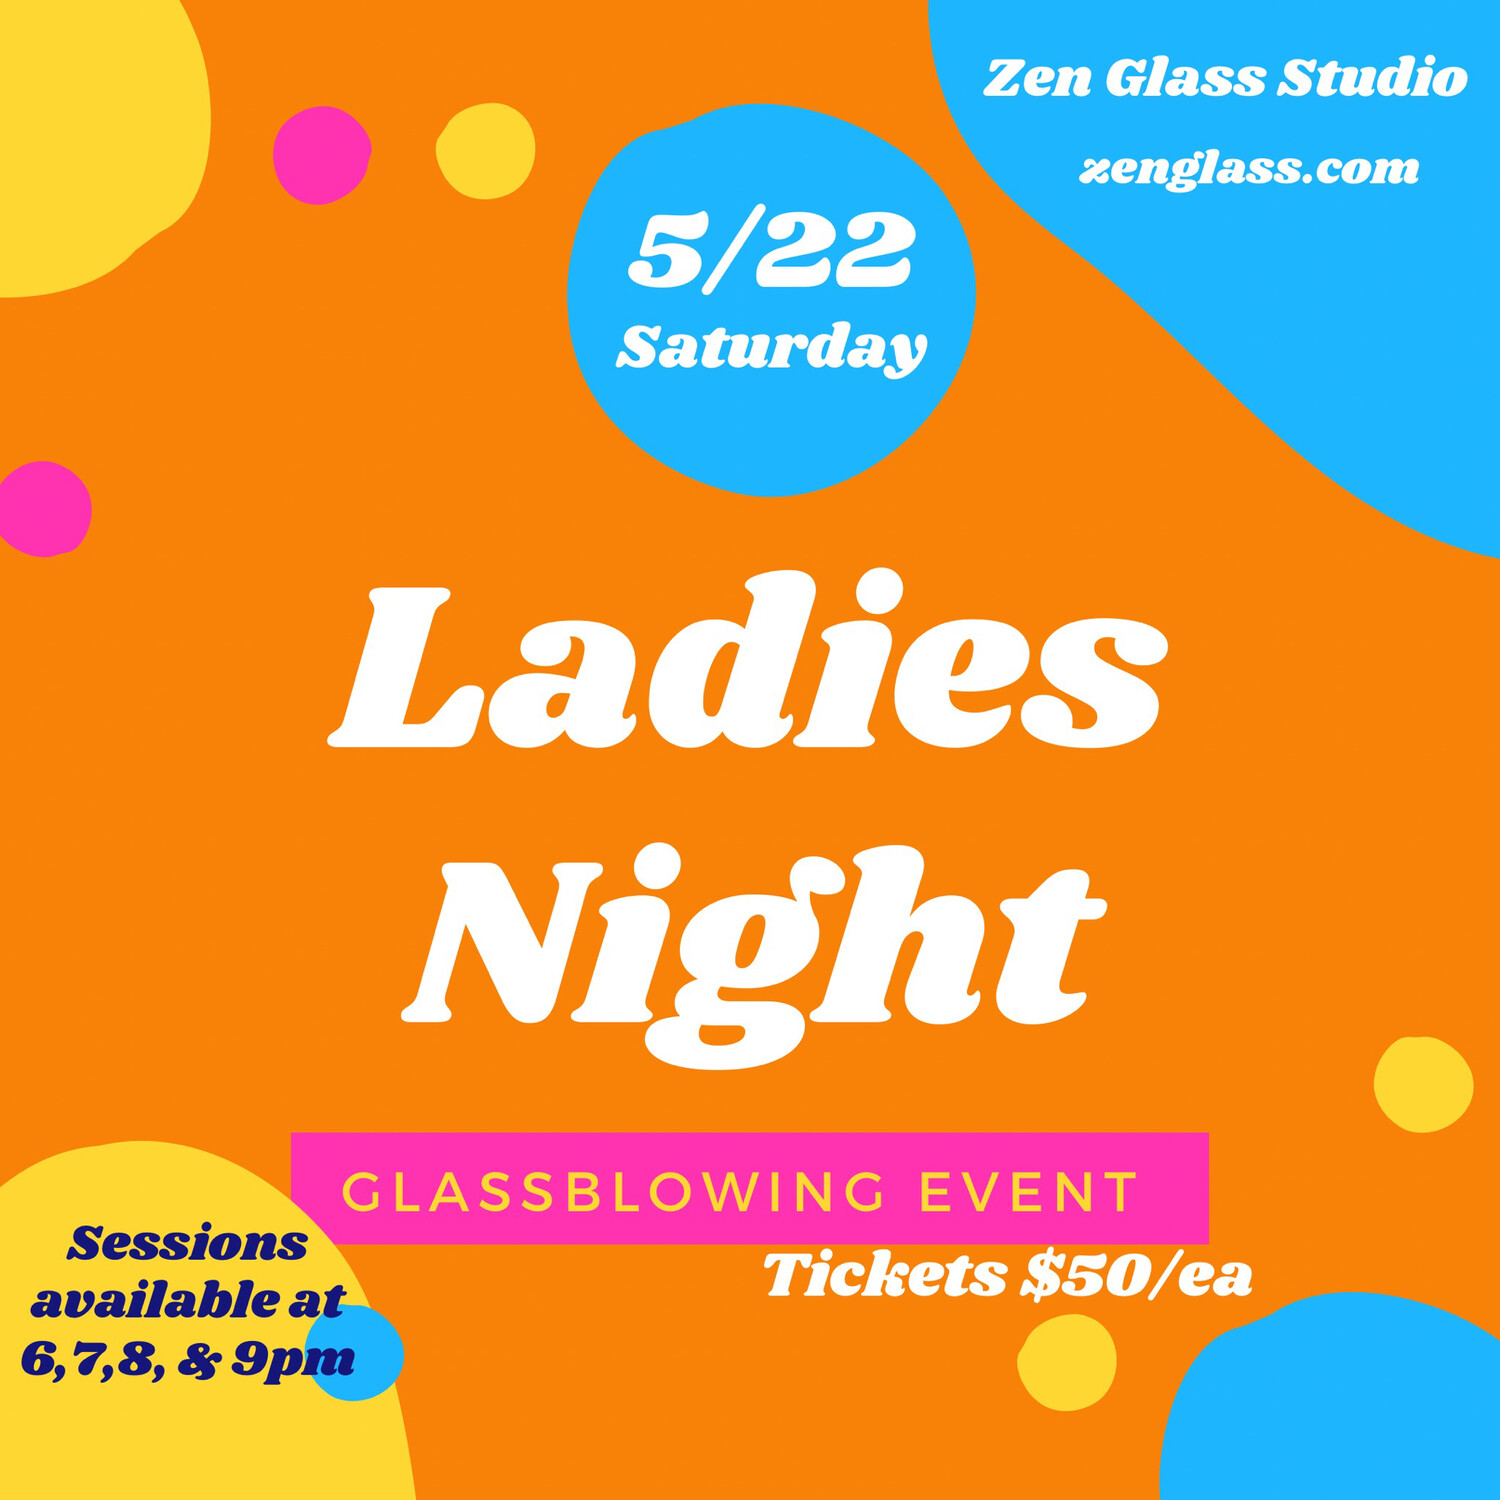 Ladies Night Saturday May 22nd 9pm